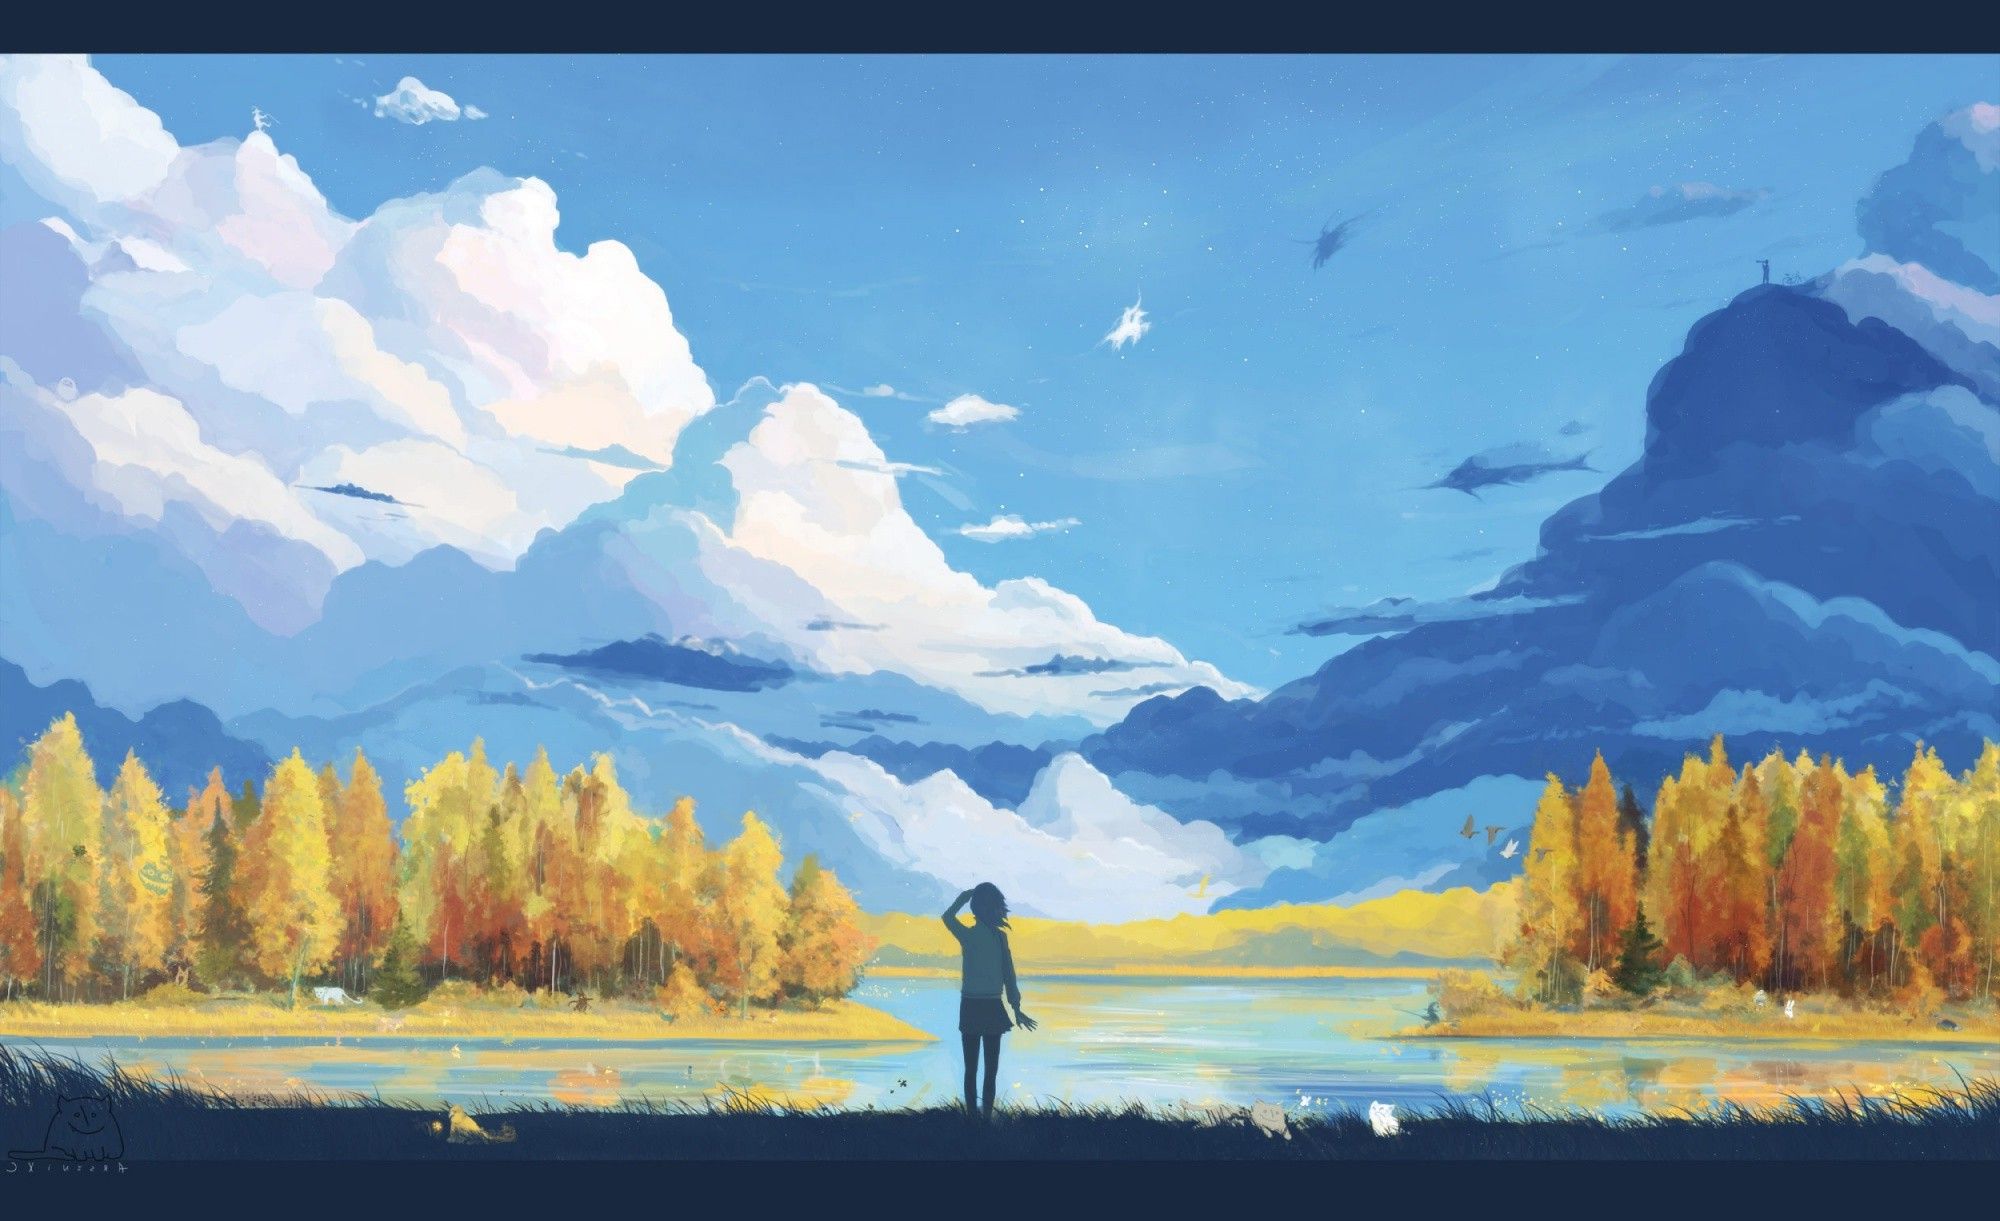 anime, Landscape, Nature, Fantasy Art, Minimalism Wallpaper HD / Desktop and Mobile Background